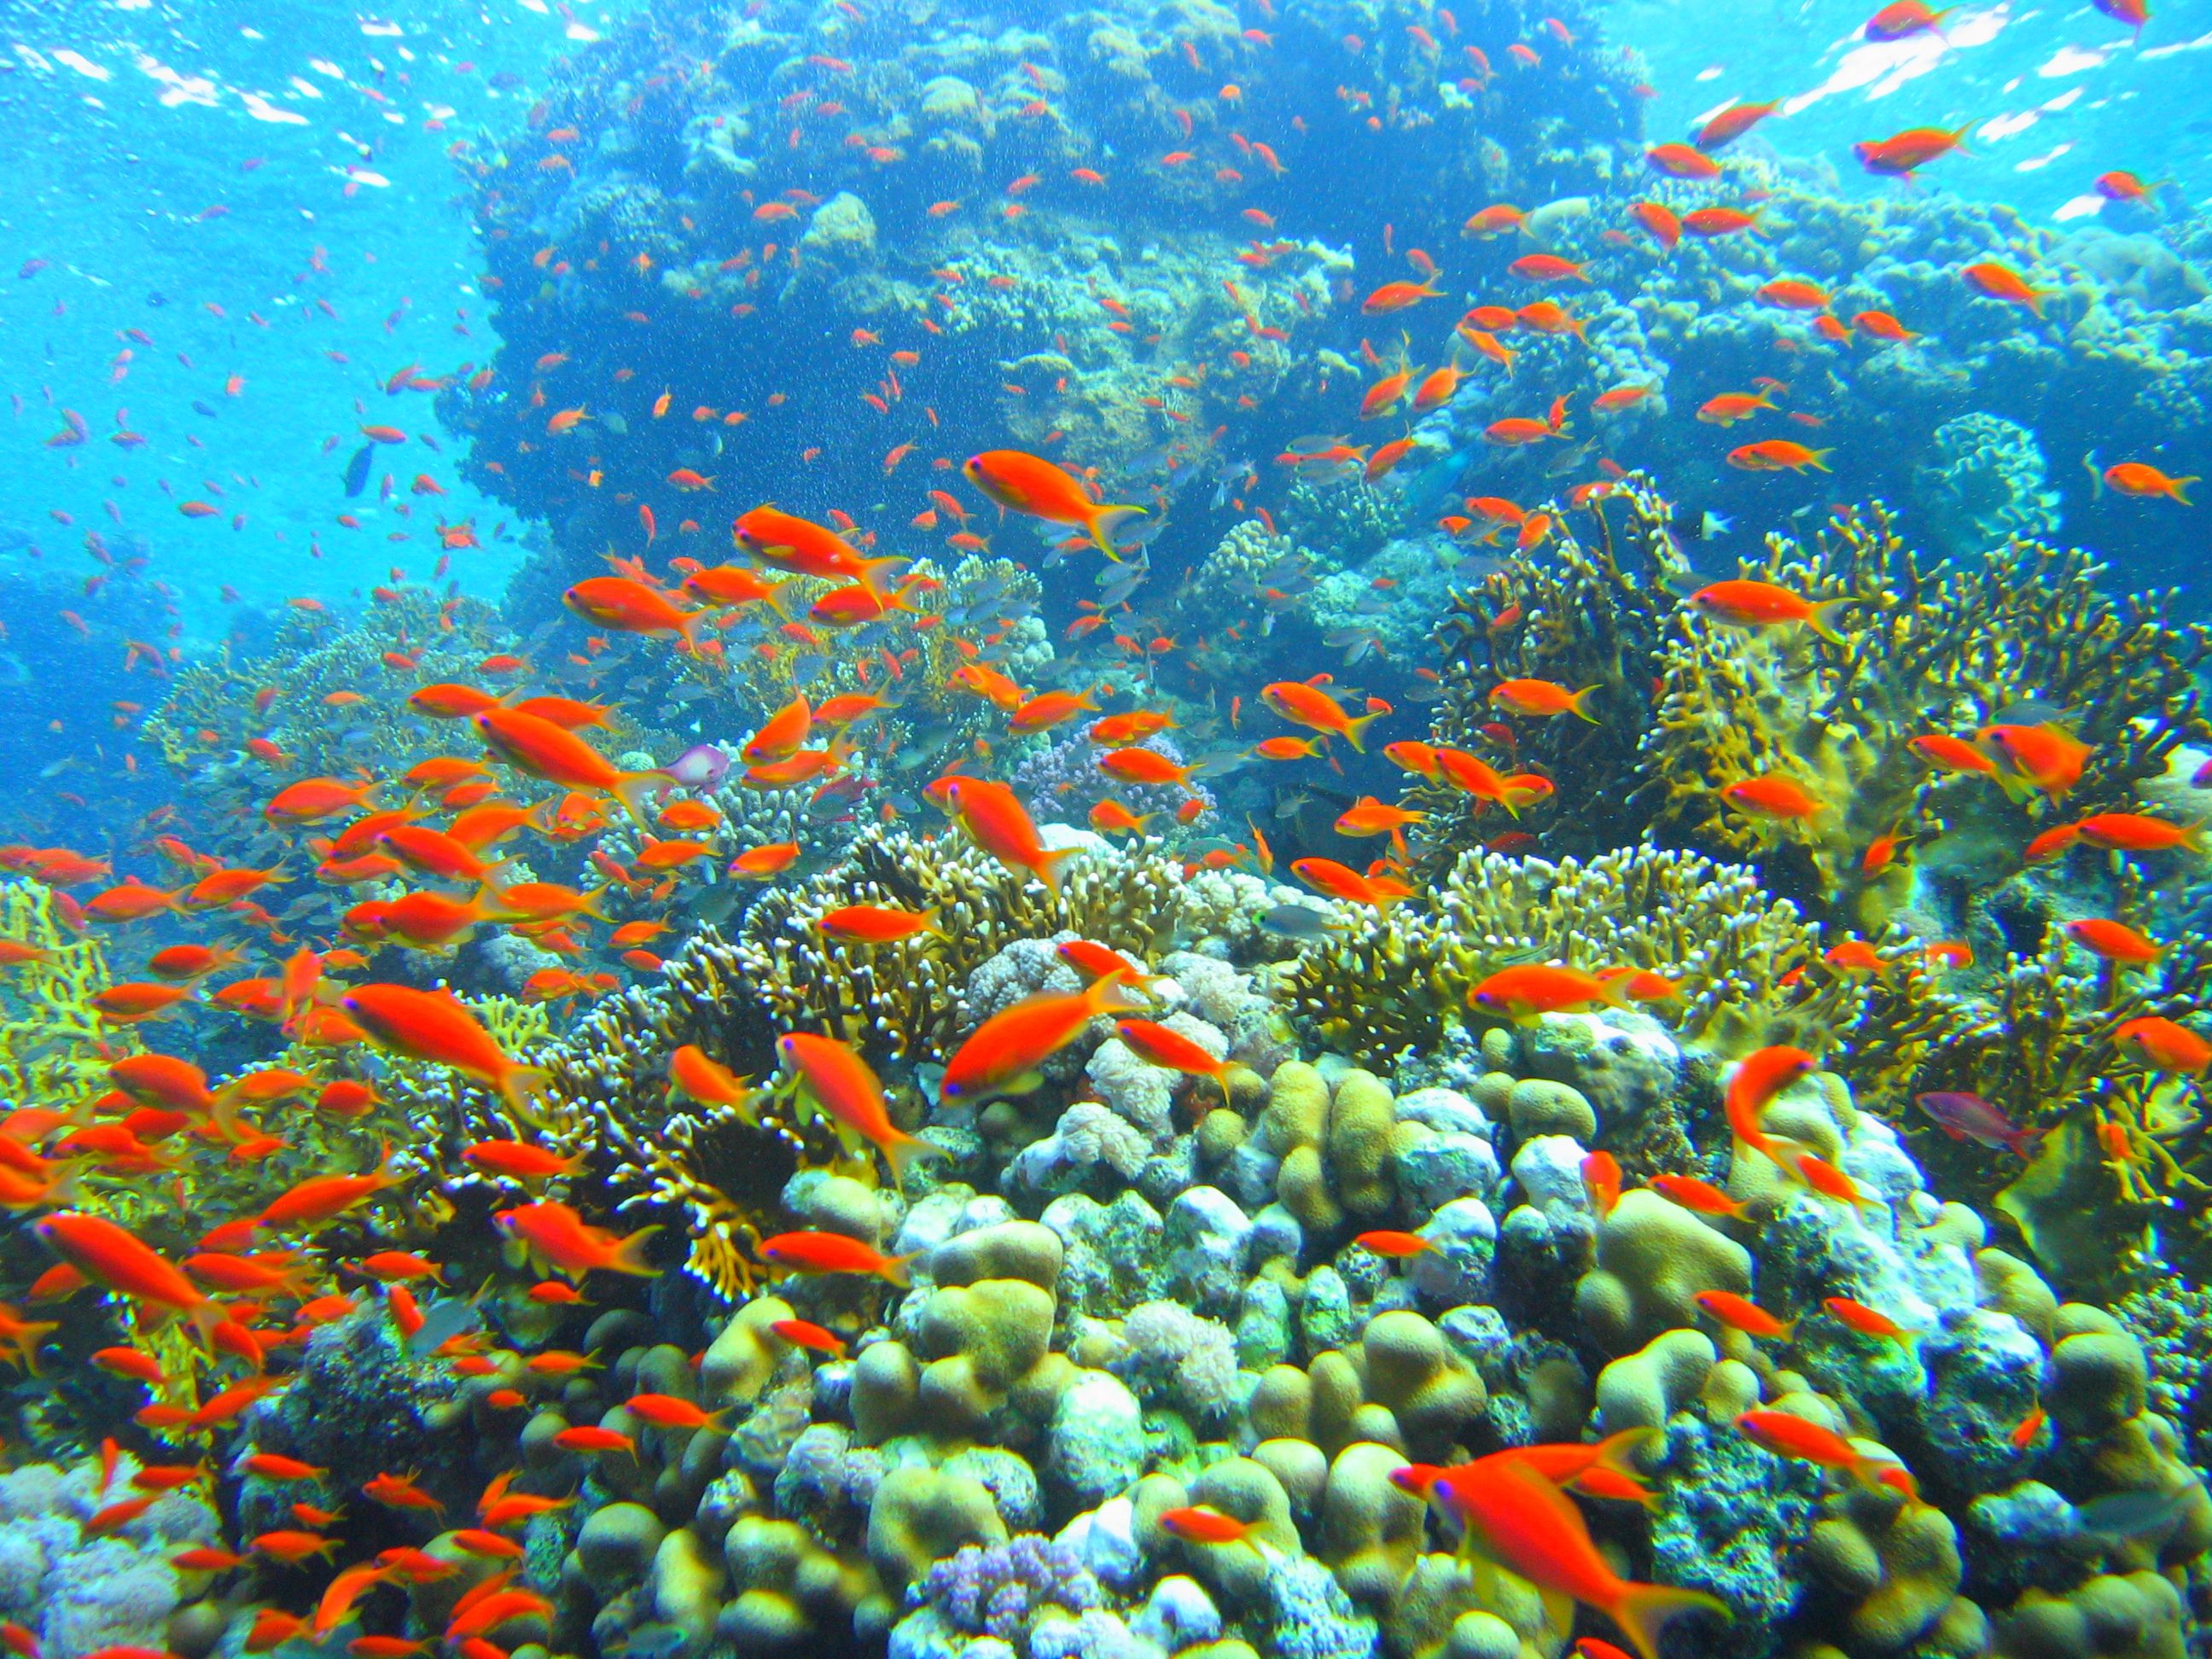 Coral_reef_in_Ras_Muhammad_nature_park_(Iolanda_reef).jpg